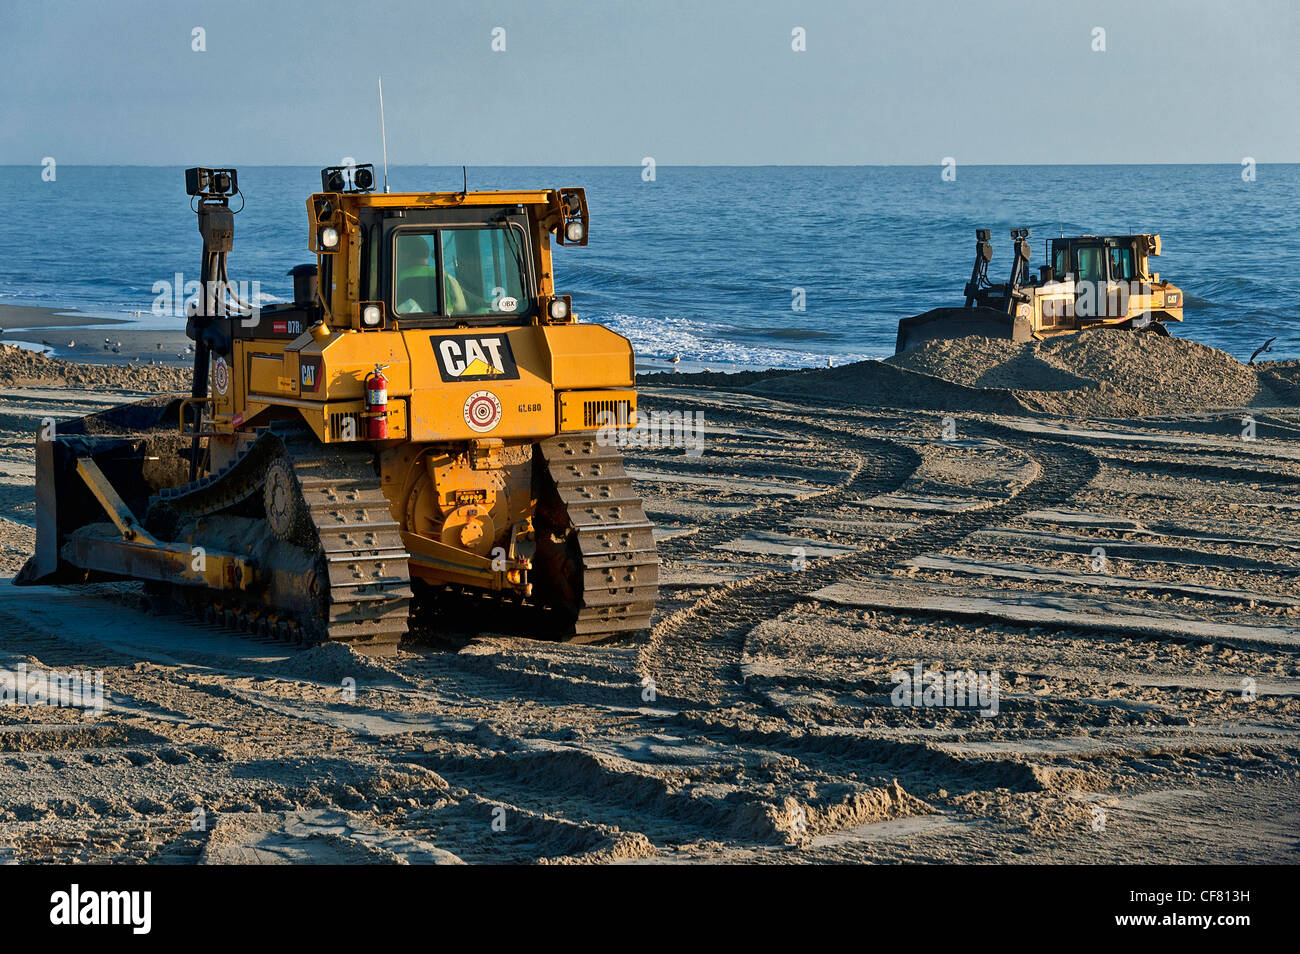 Reconstrucción de playas erosionadas, nags head, Outer Banks, Carolina del Norte, EE.UU. Foto de stock